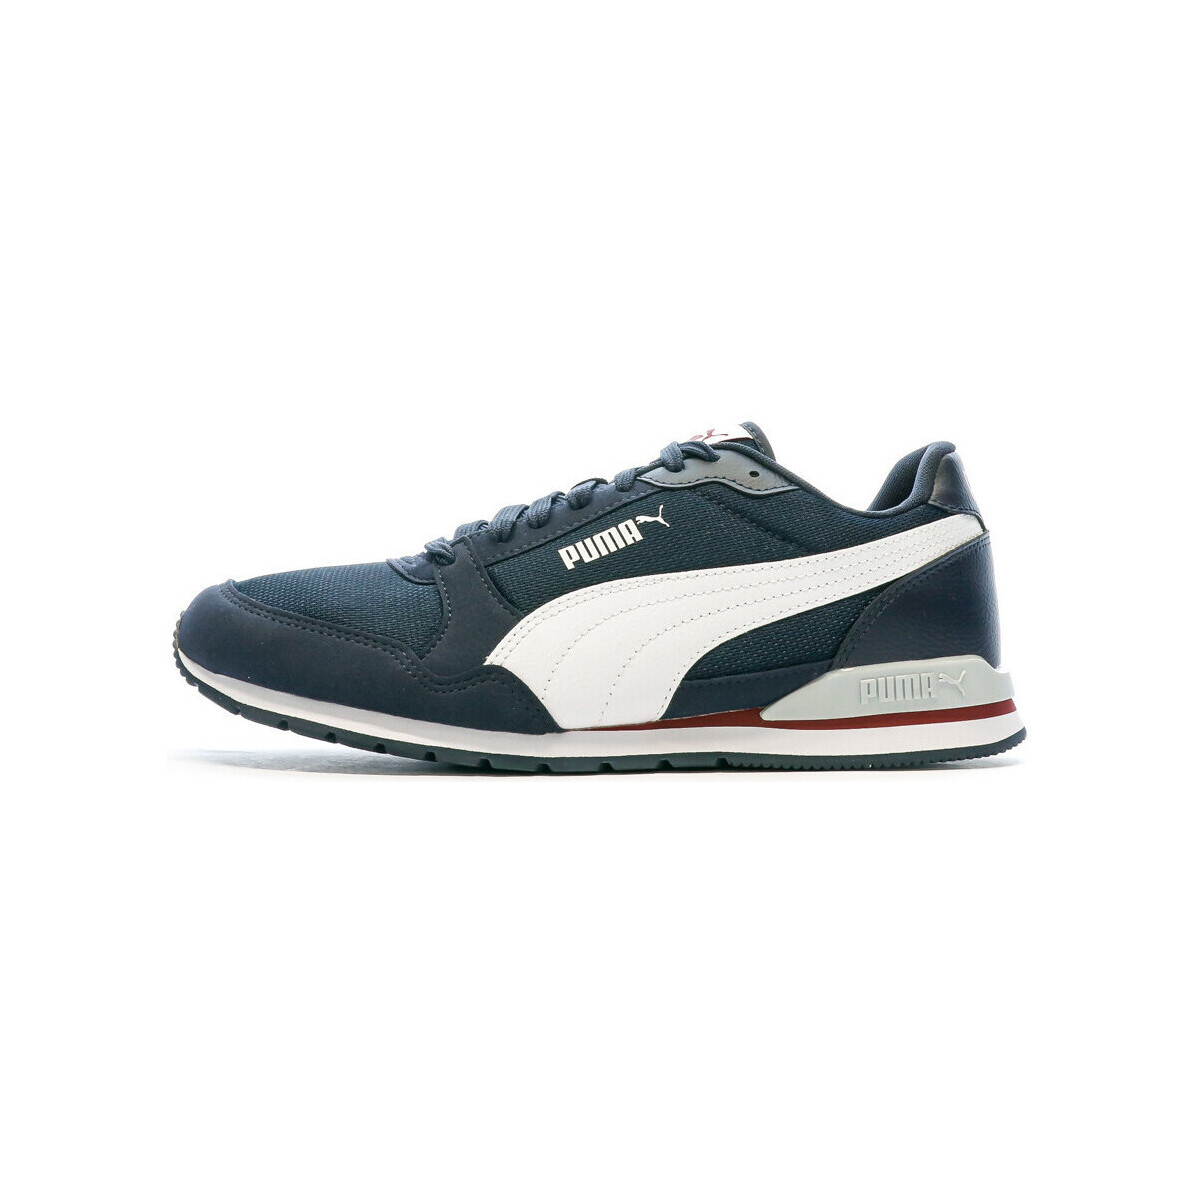 Schuhe Herren Sneaker Low Puma 384640-11 Blau